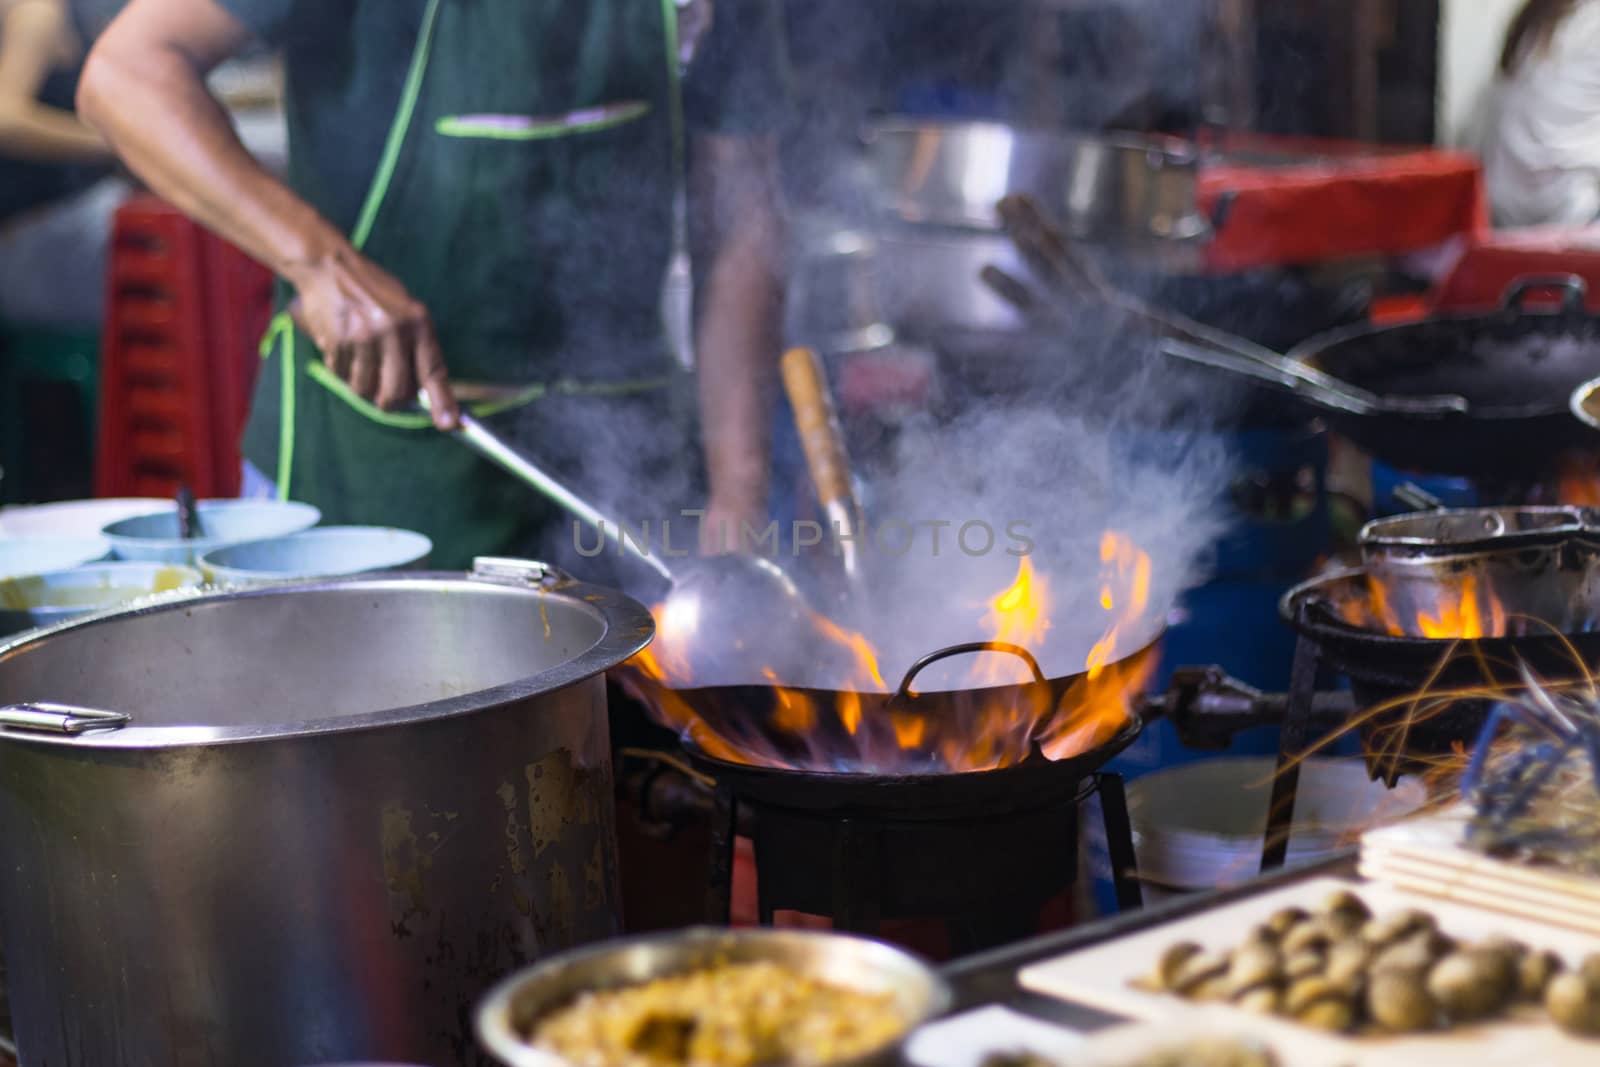 Street food in Bangkok Bangkok Thailand - Oct 24, 2020 :- Chef cooking with fire with frying pan on gas hob at yoawarat Bangkok Thailand.